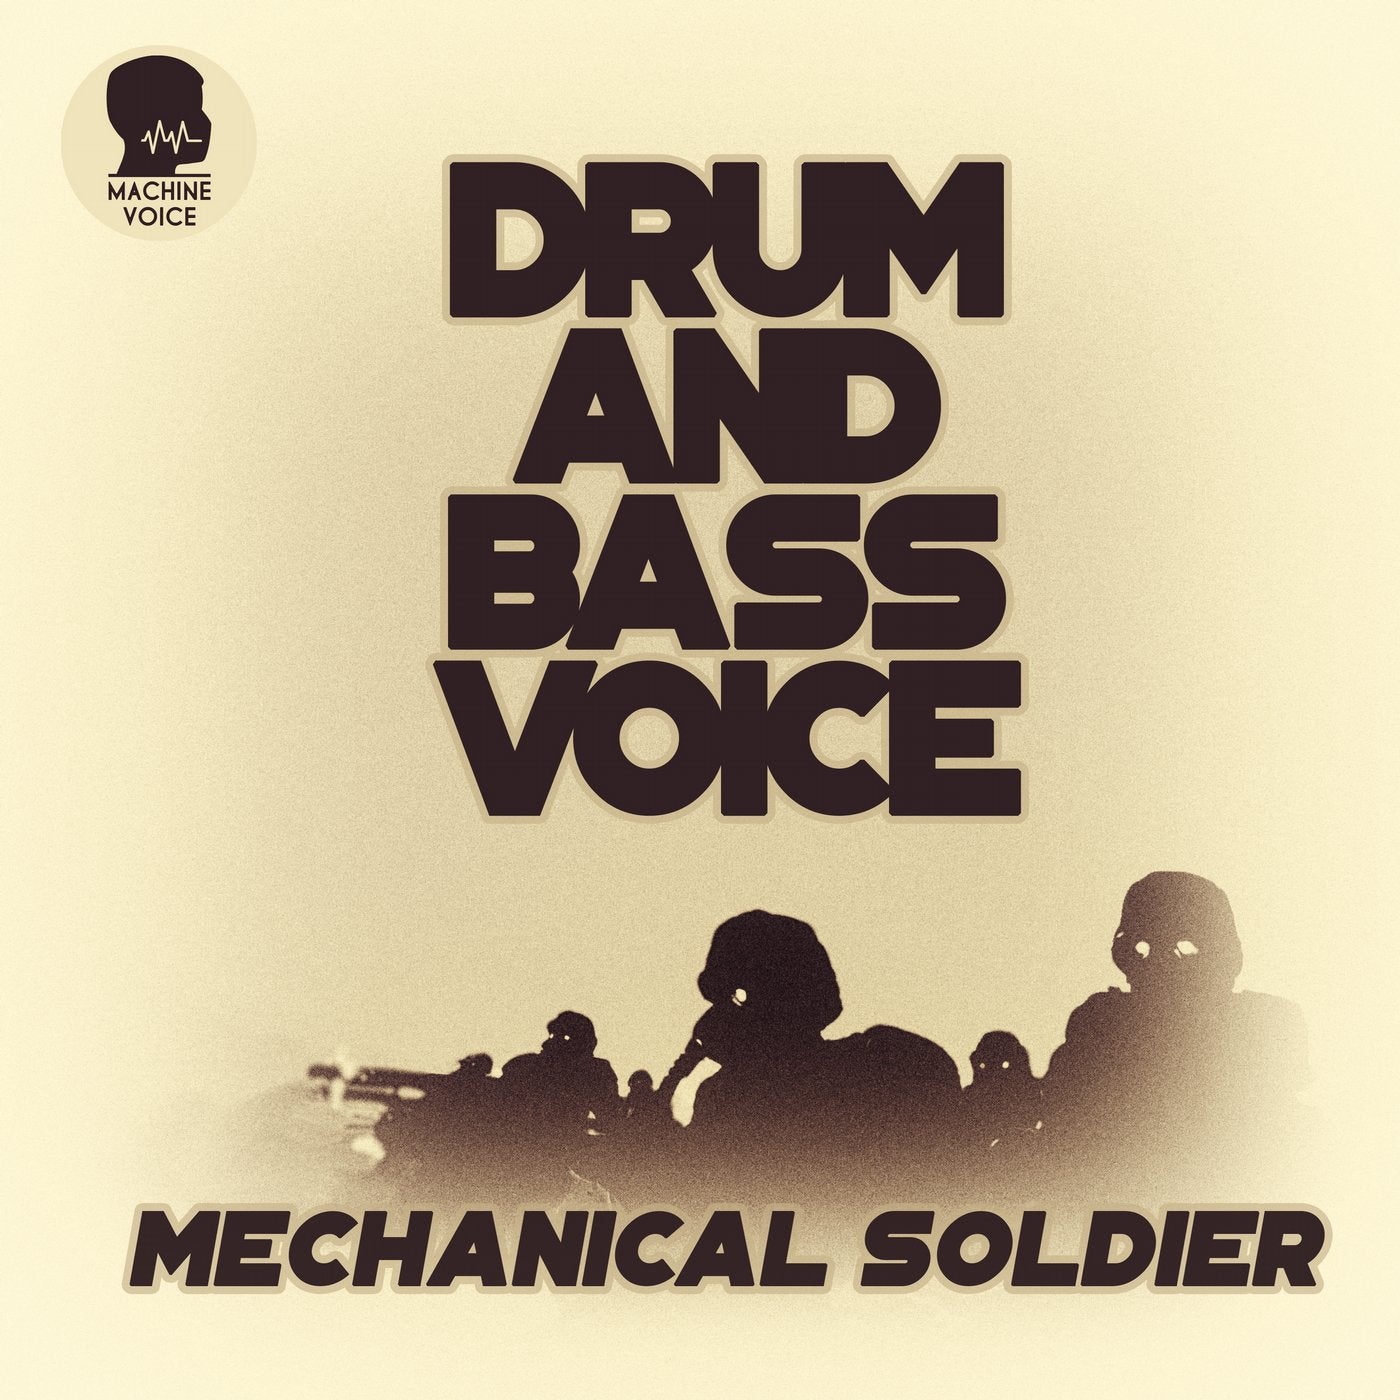 Mechanic voice. Bass Voice. Mechanical Soldier mp3. Drum and Bass Art. Бас миі.